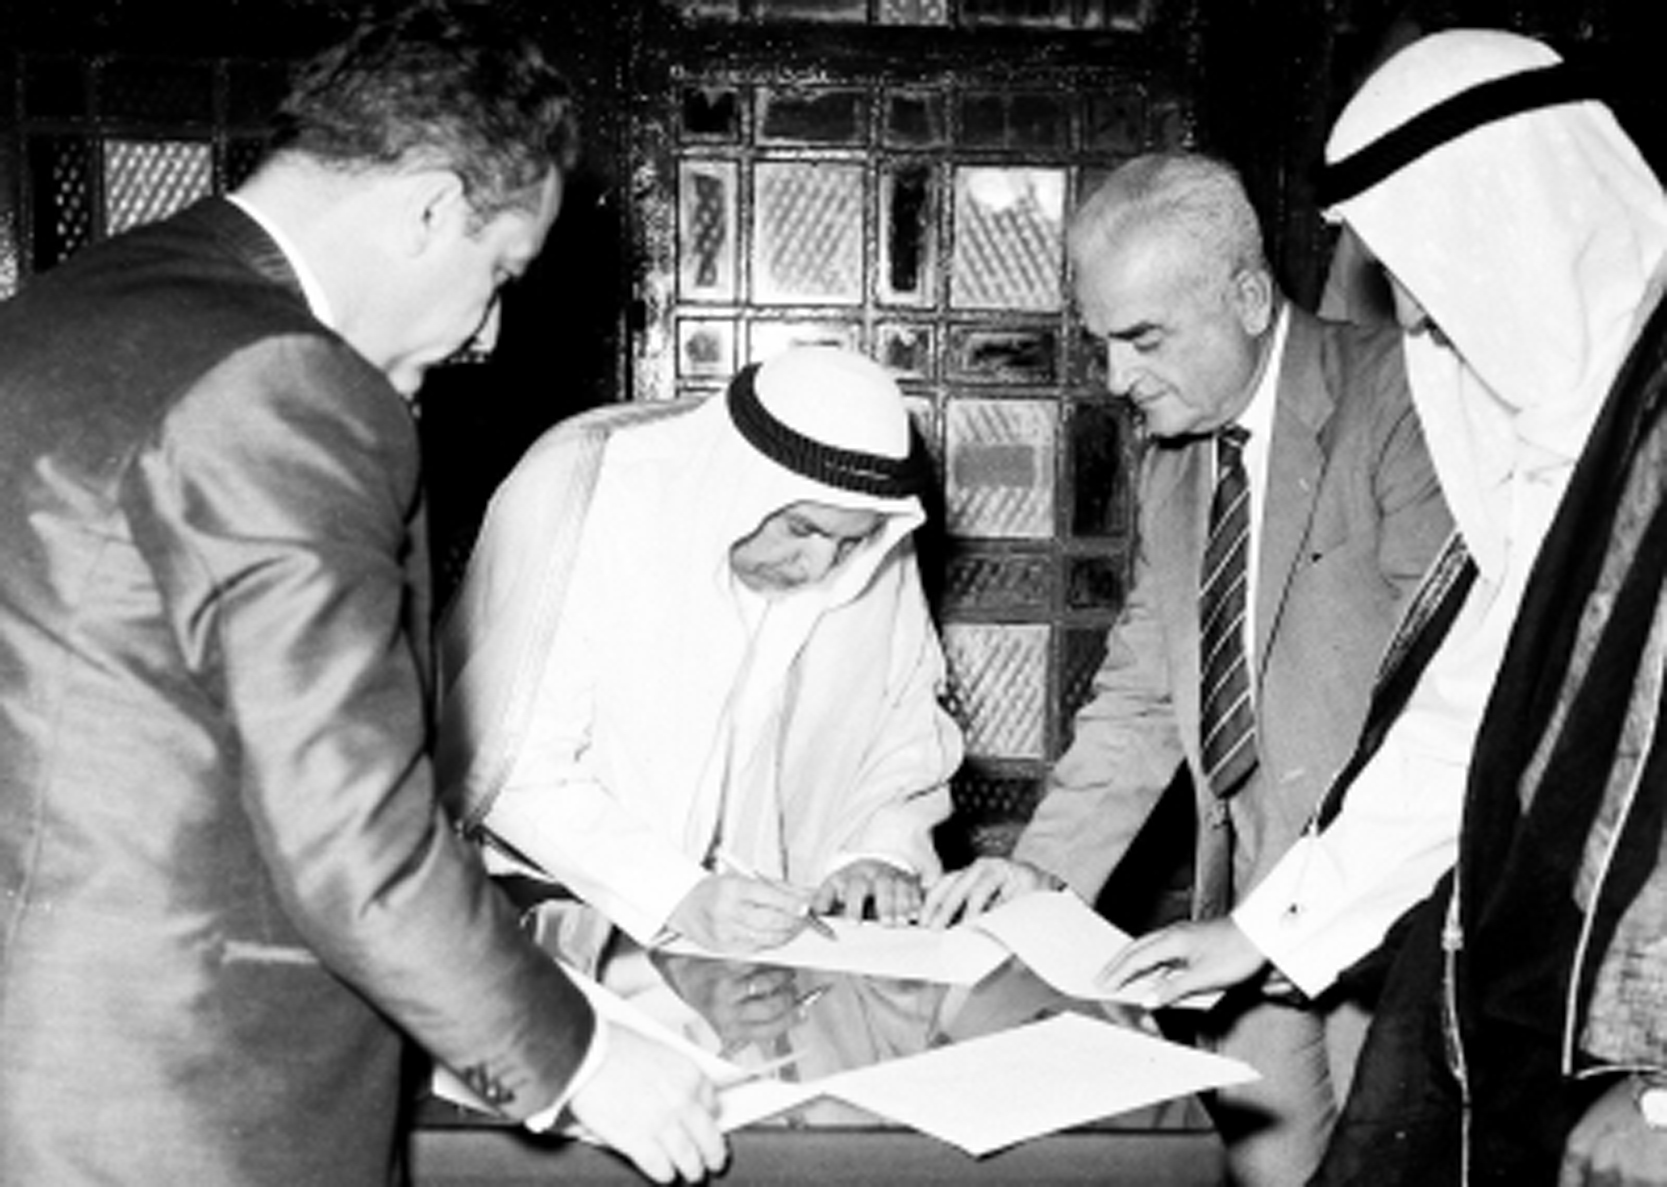 المغفور له الشيخ عبدالله السالم الصباح يوقع على وثيقة استقلال الكويت في 19 يونيو 1961